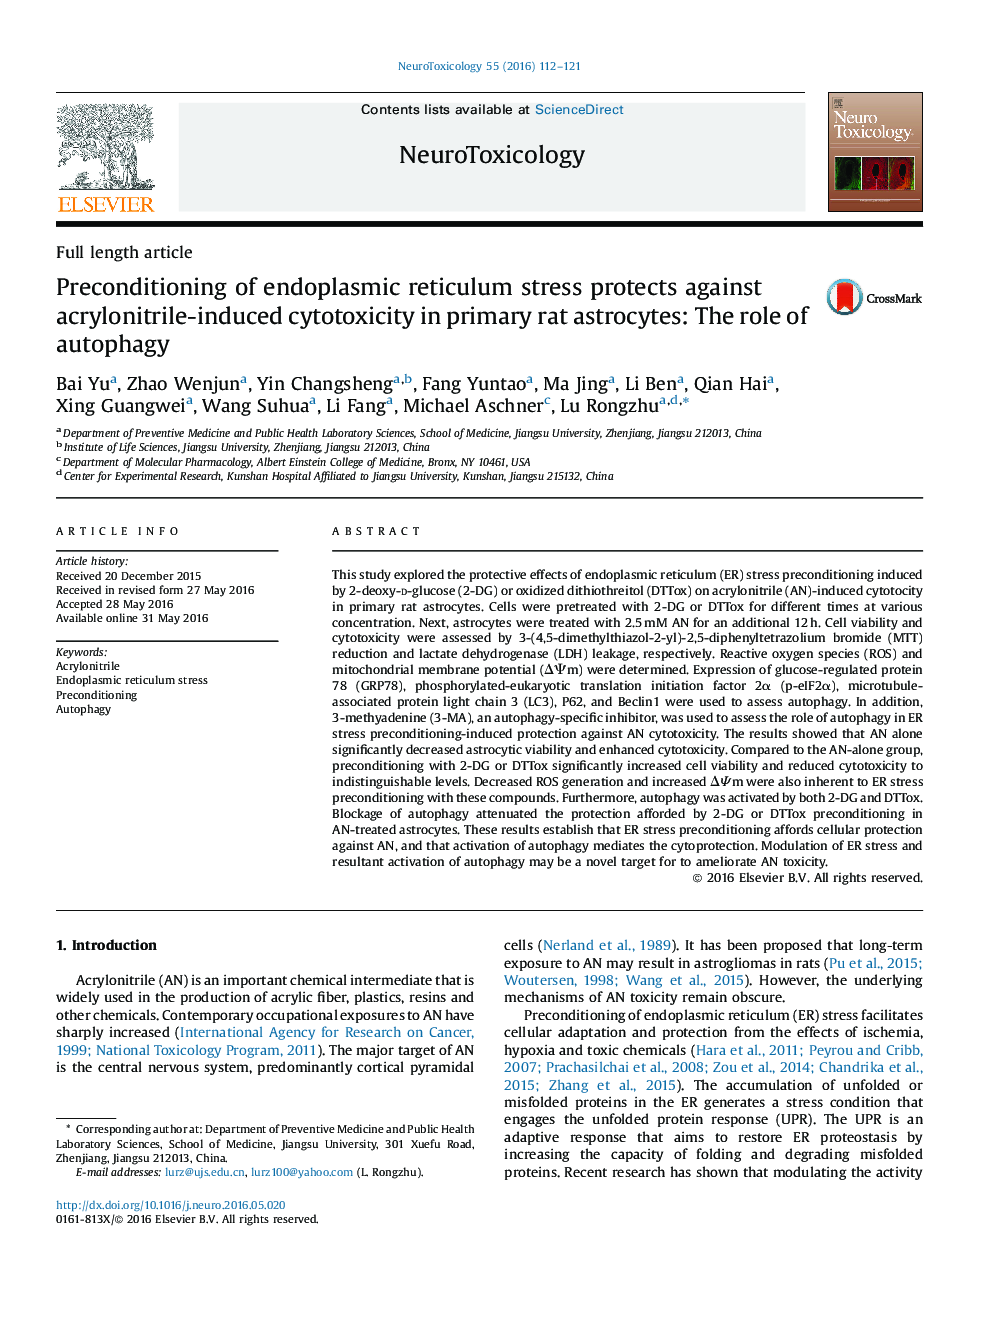 پیشگیری از استرس شبکیه اندوپلاسمی محافظت در برابر سیتوتوکسی سمی ناشی از اکریلونیتریل در آستروسیت های روتین اولیه: نقش اتوفایگی 